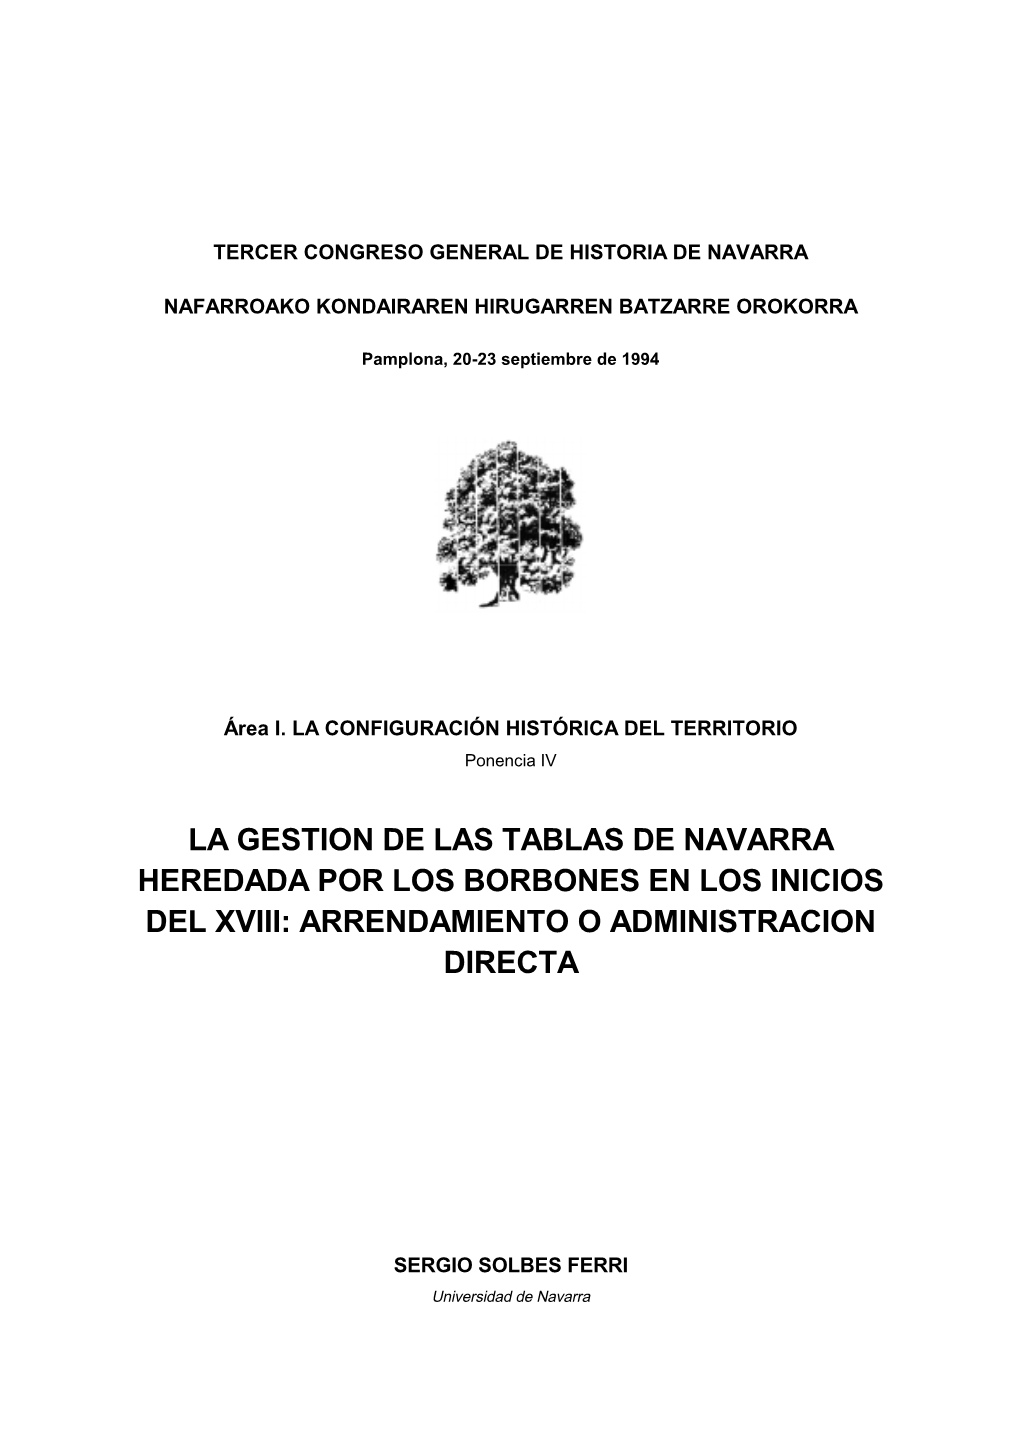 La Gestion De Las Tablas De Navarra Heredada Por Los Borbones En Los Inicios Del Xviii: Arrendamiento O Administracion Directa